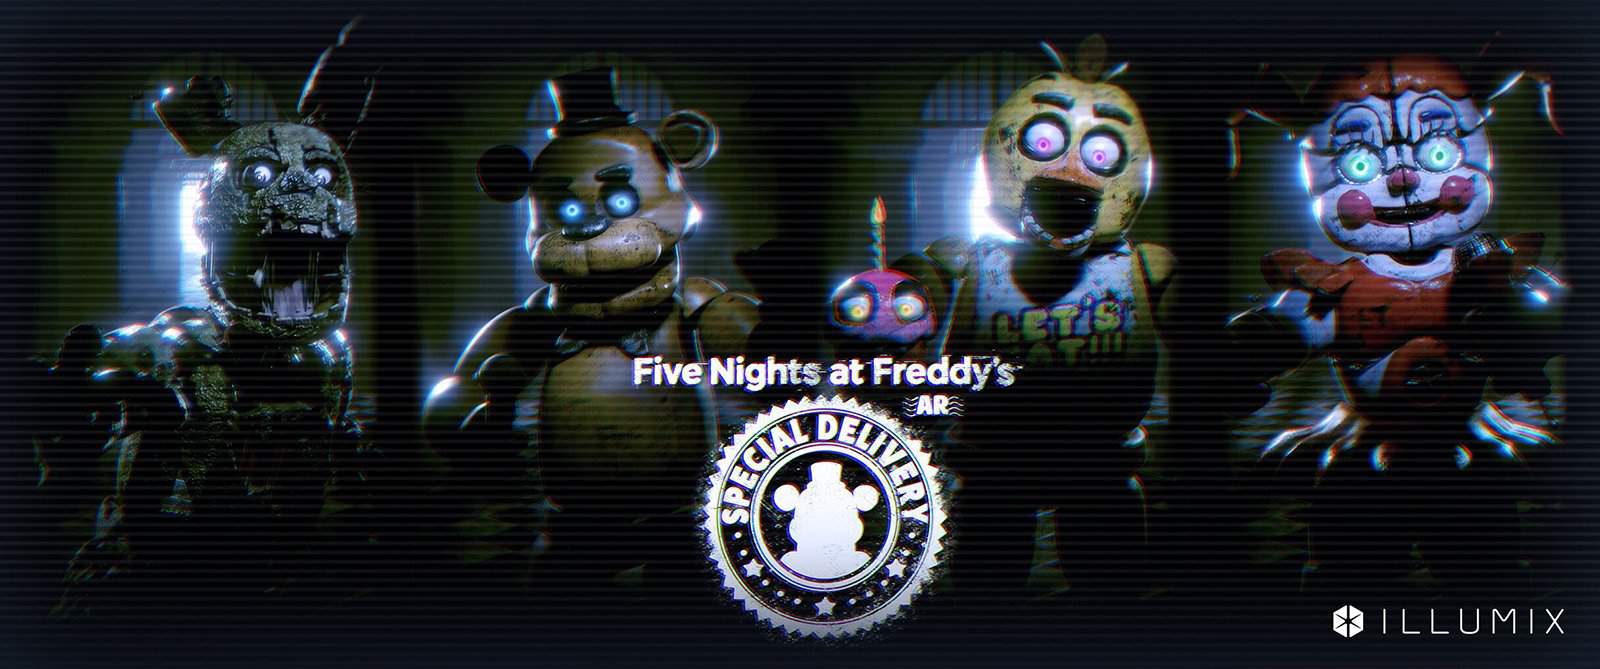 Eu acho q tem haver com o novo fnaf ar Five Nights at Freddys PT/BR Amino.